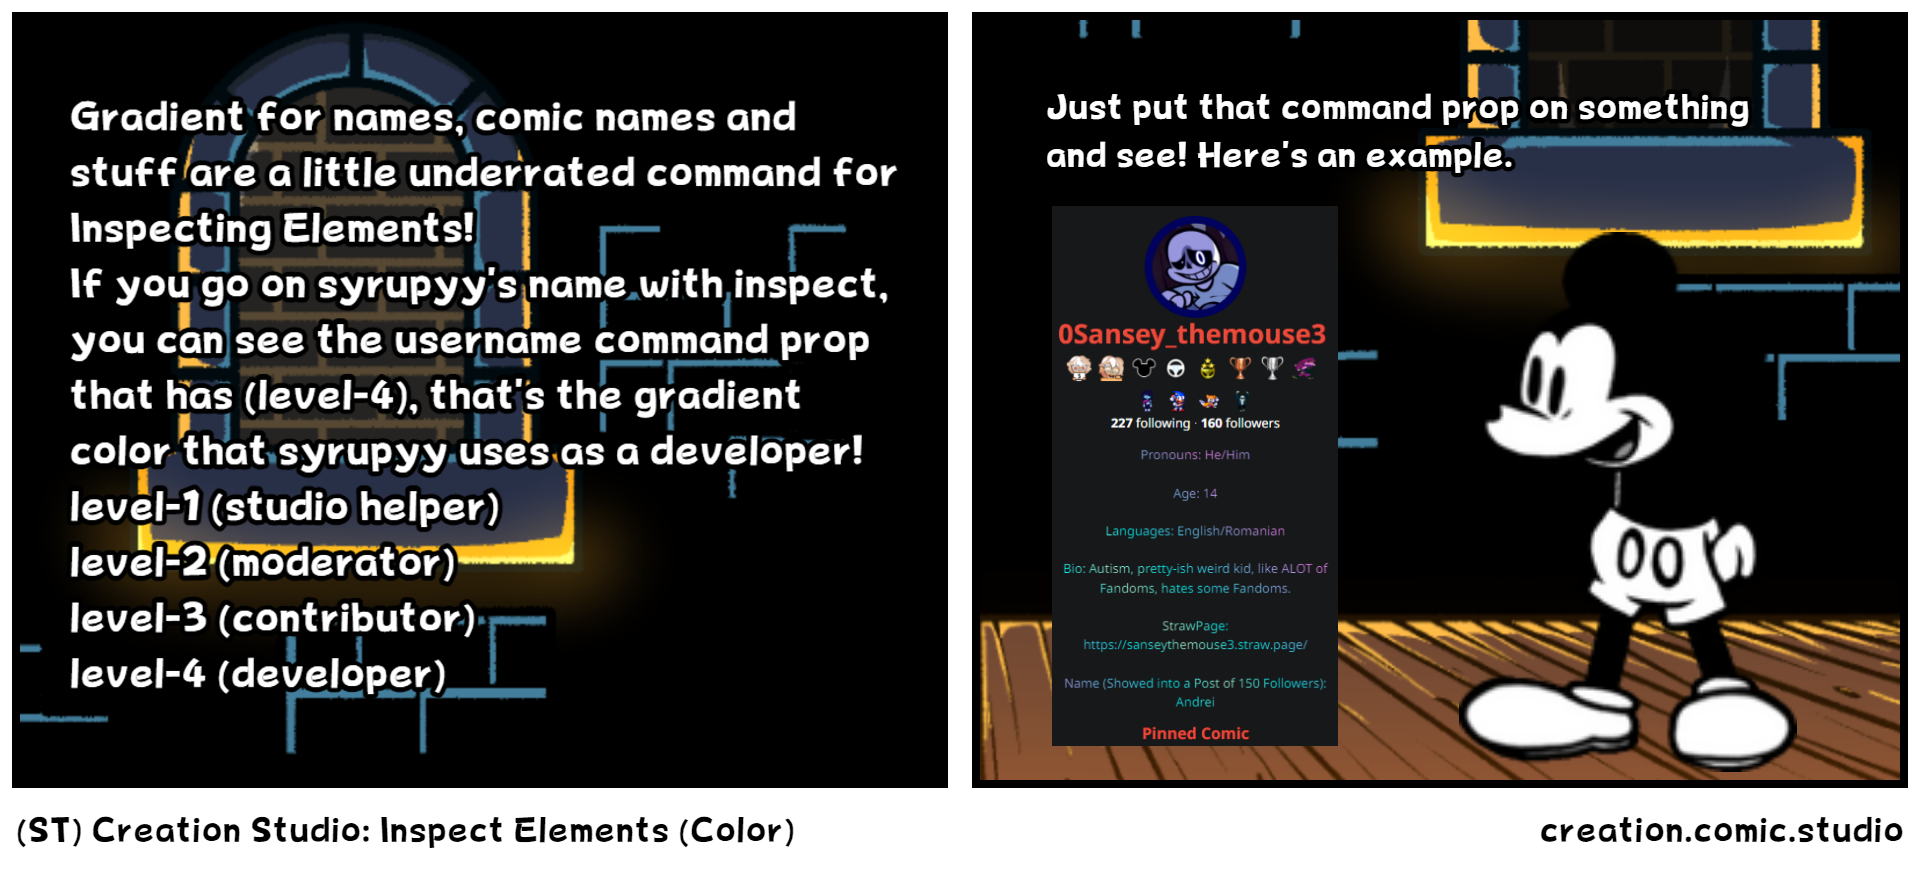 (ST) Creation Studio: Inspect Elements (Color)